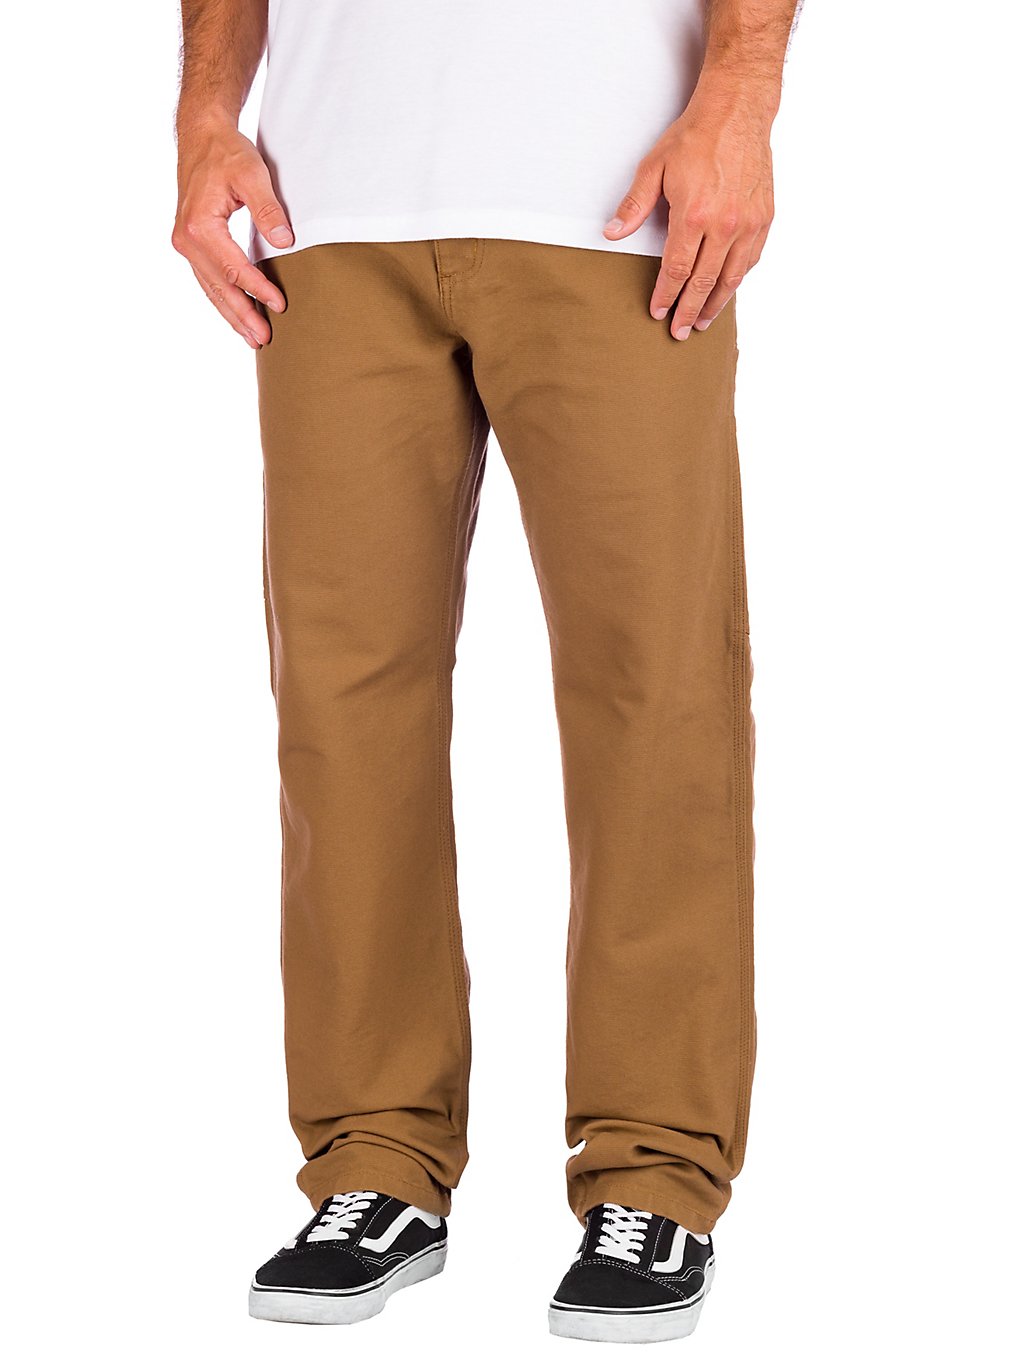 Carhartt WIP Ruck Single Knee Jeans hamilton brown rinsed